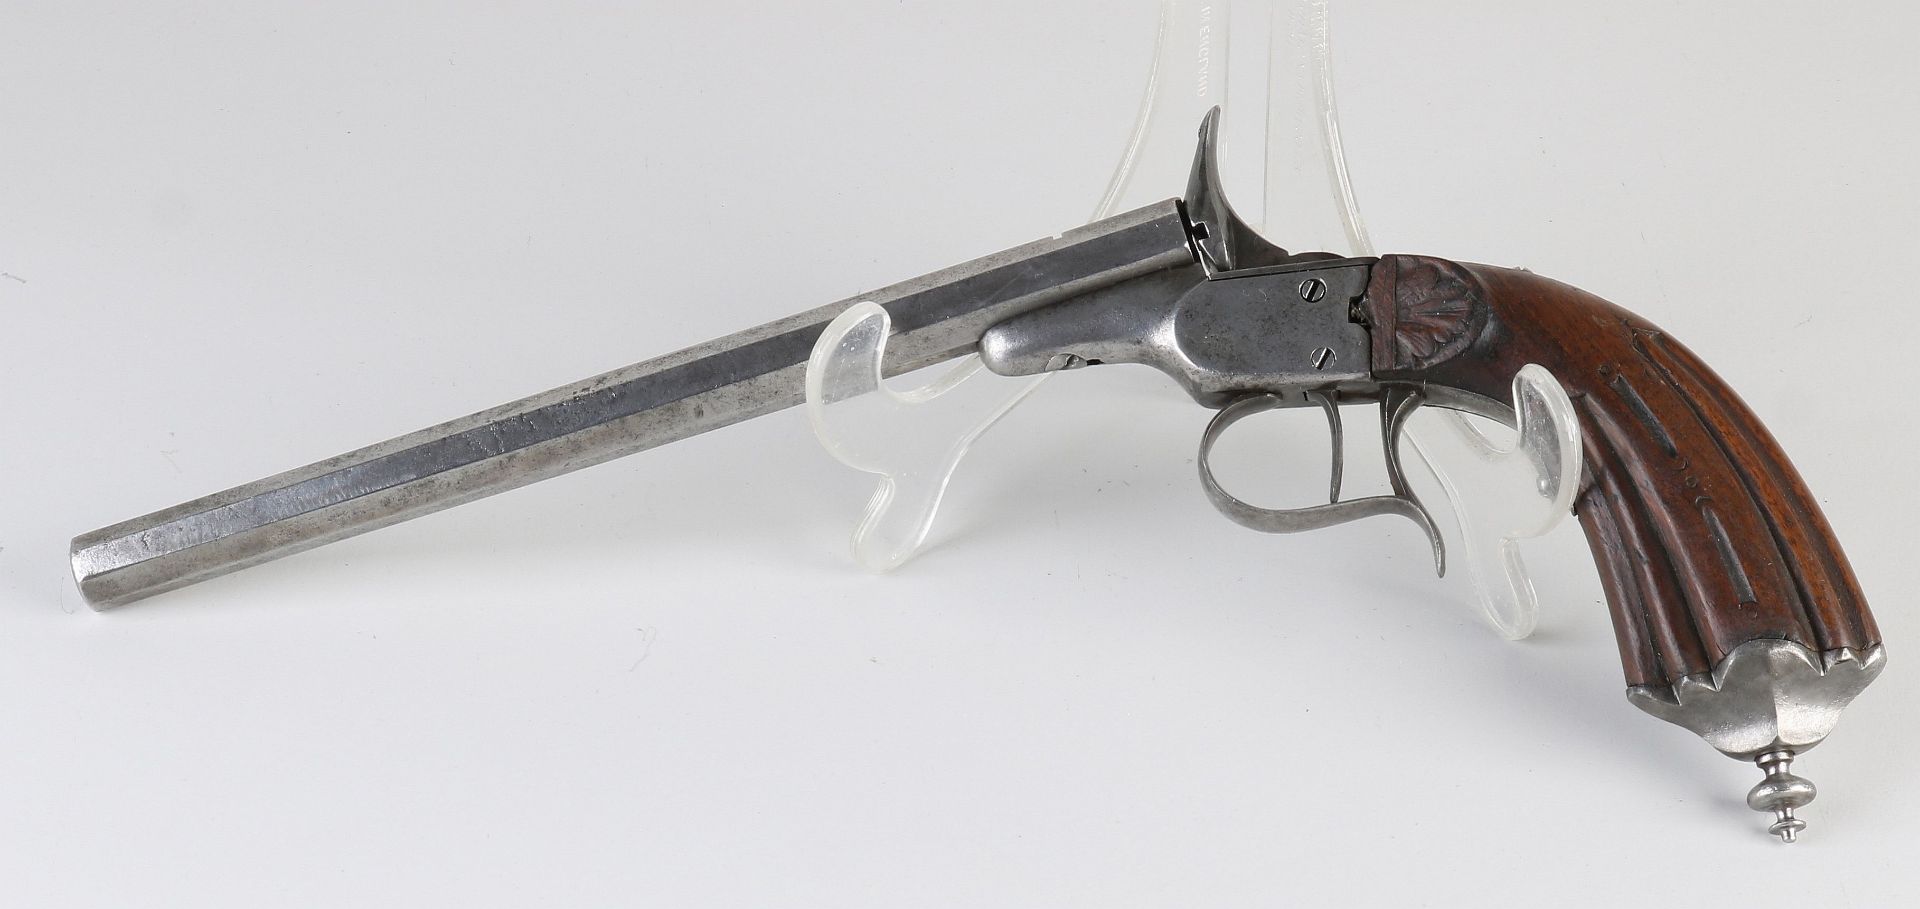 Antique rimfire pistol, L 31 cm. - Image 2 of 2